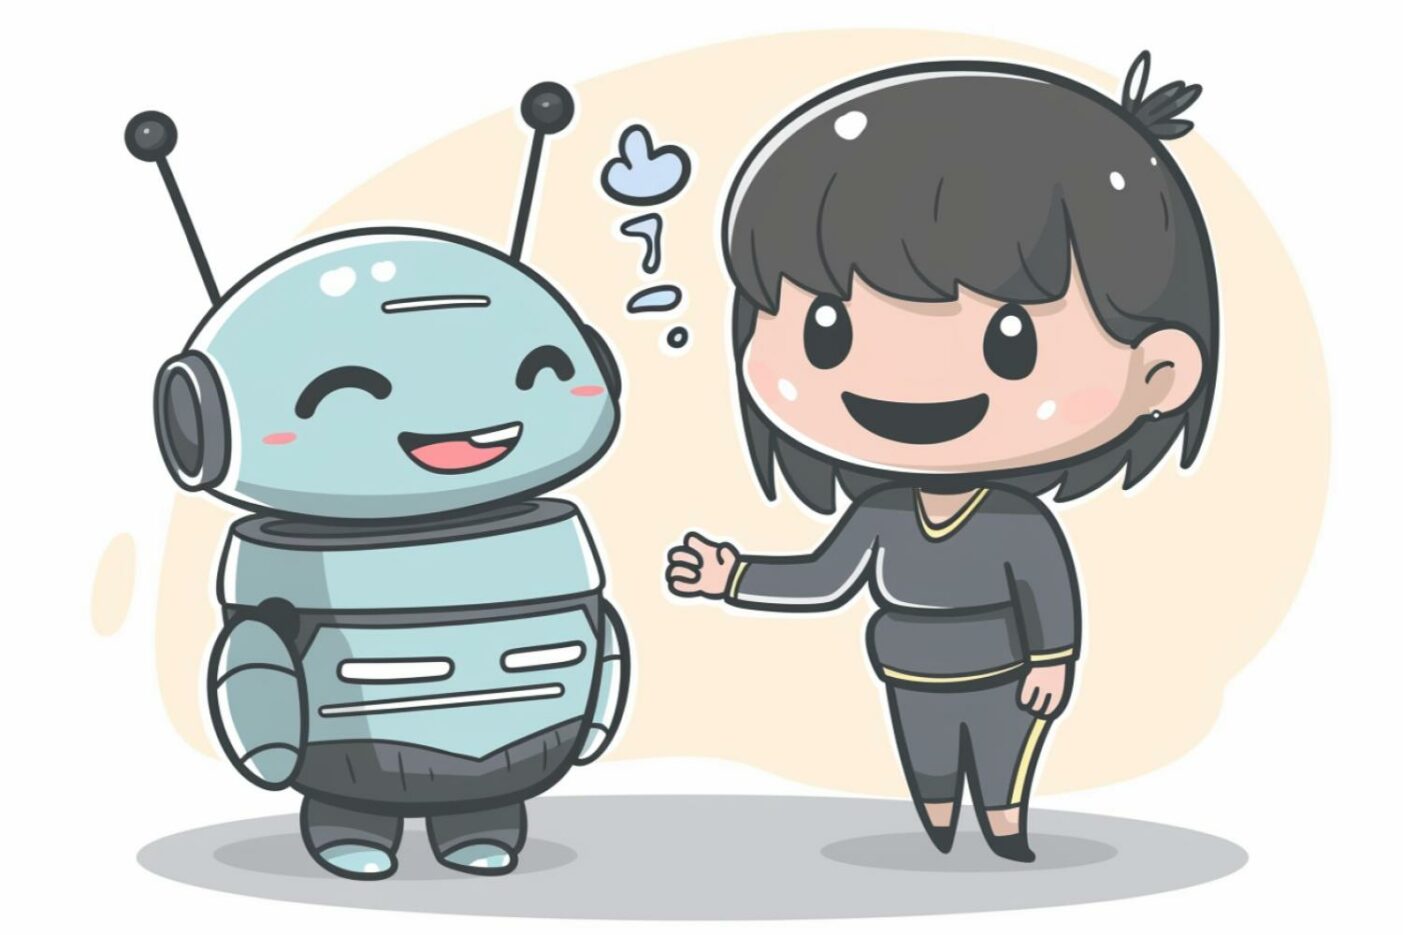 Robot Human Friends